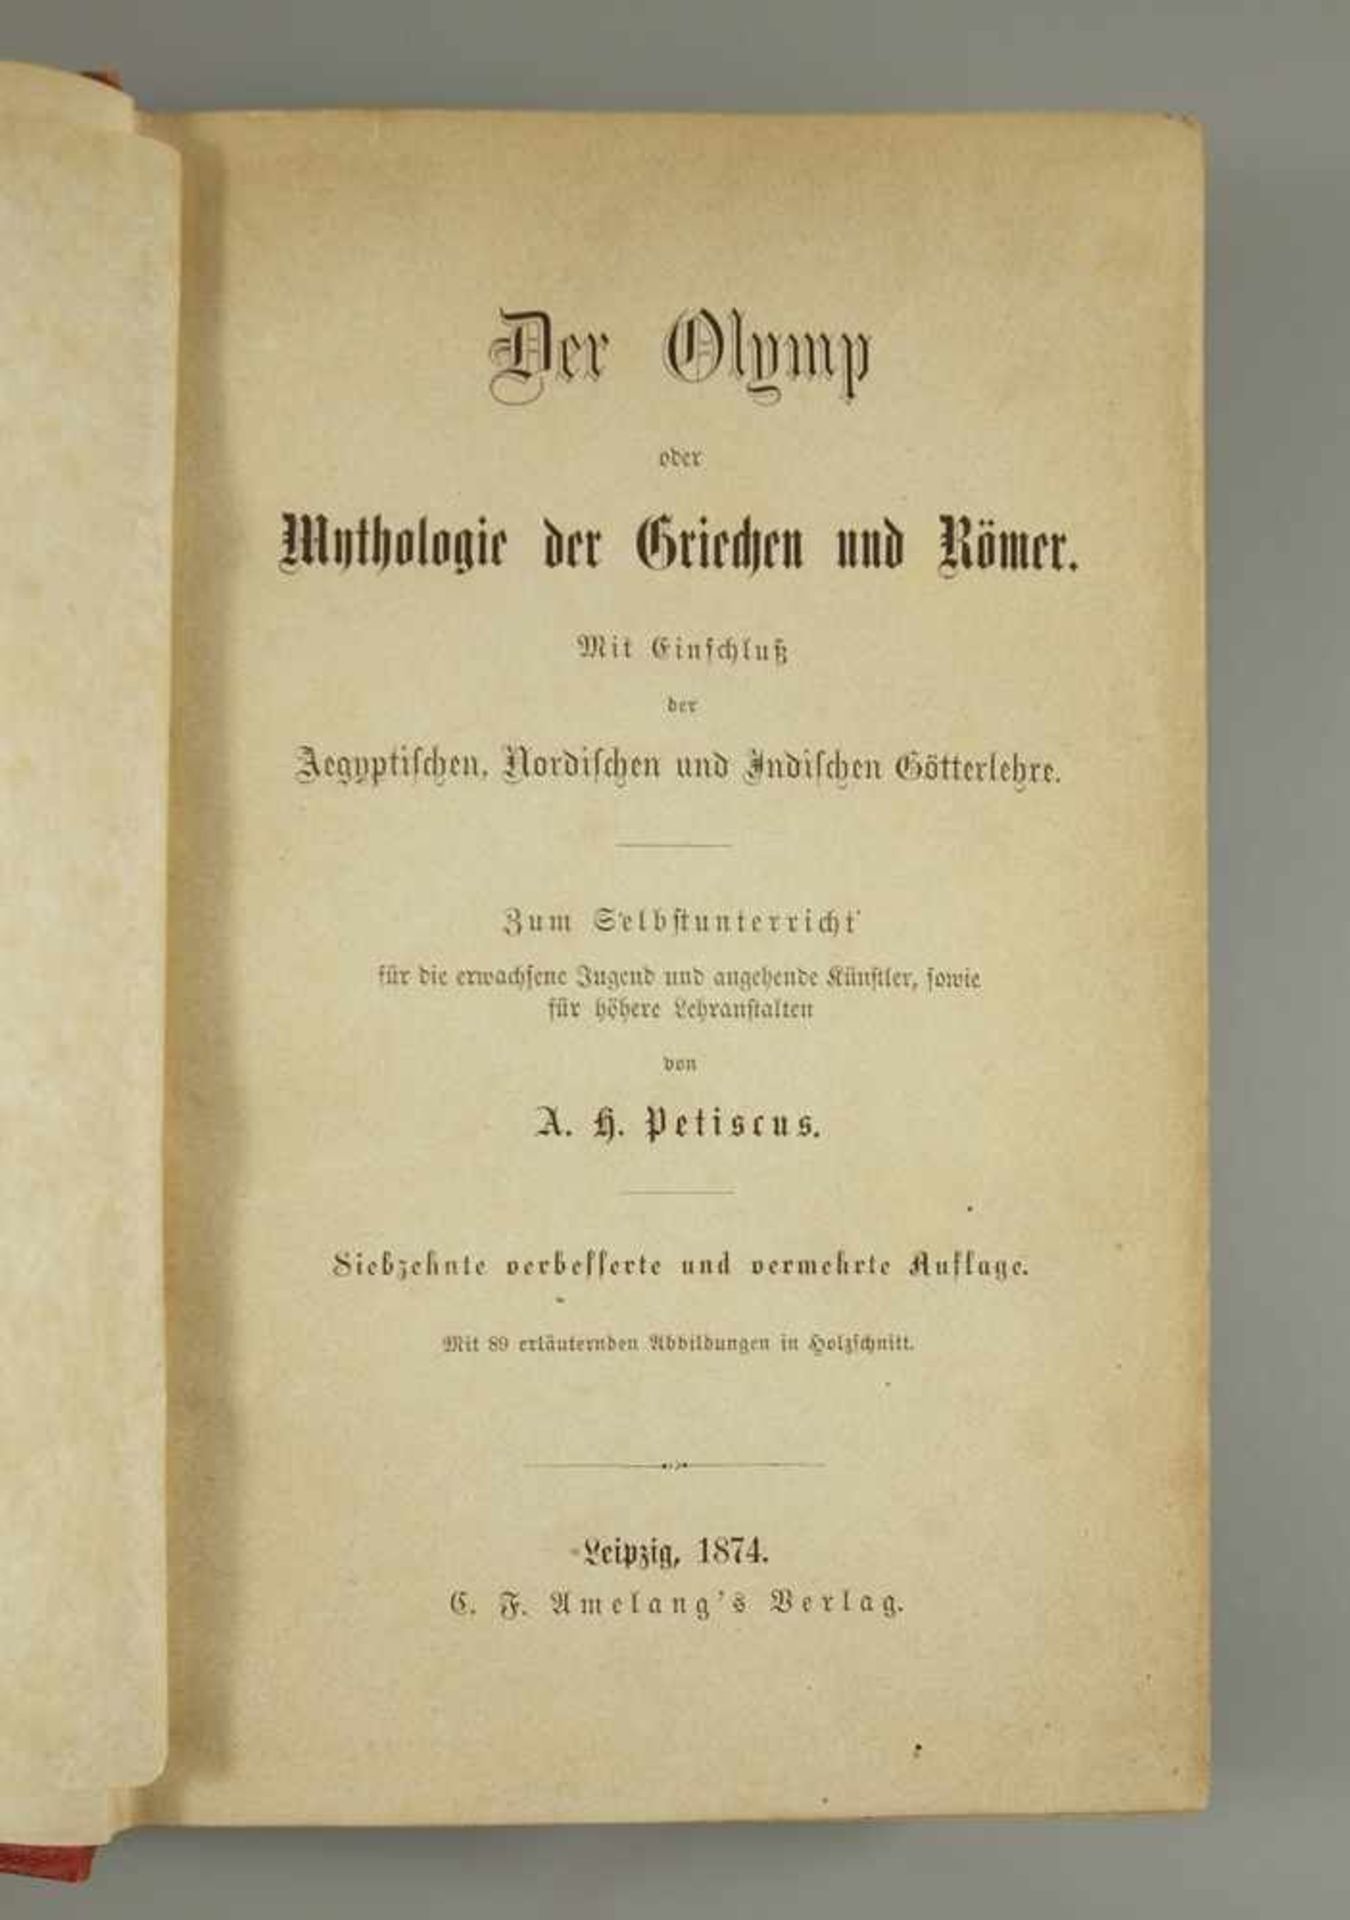 "Der Olymp", Leipzig, 18764, "...oder Mythologie der Griechen und Römer", Zum Selbstunterricht von - Image 2 of 4